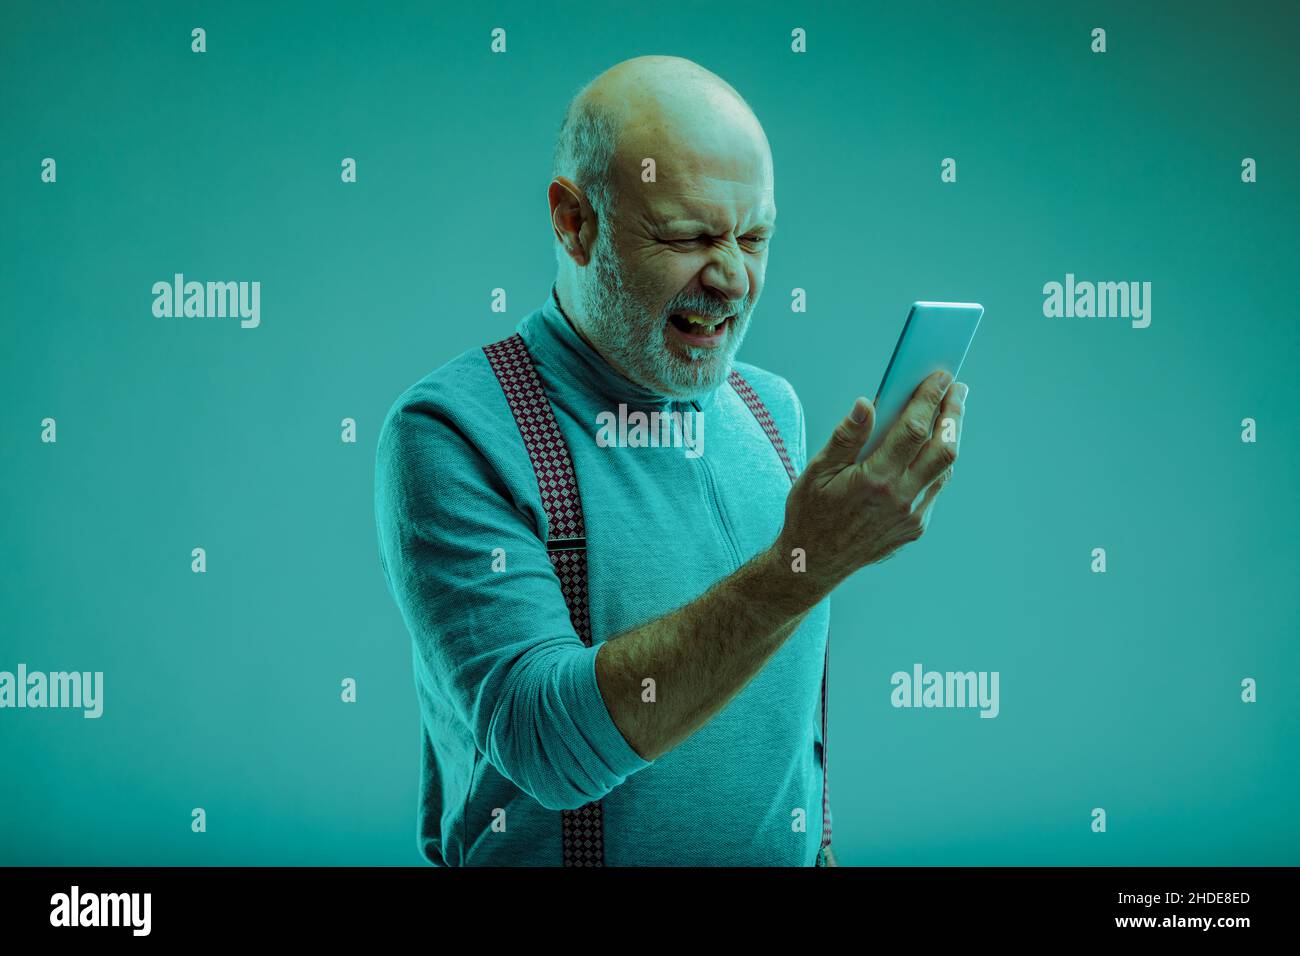 Uomo anziano che si lamenta guardando il suo smartphone in disgusto, mentre lo si accosta davanti a lui su uno sfondo blu studio Foto Stock